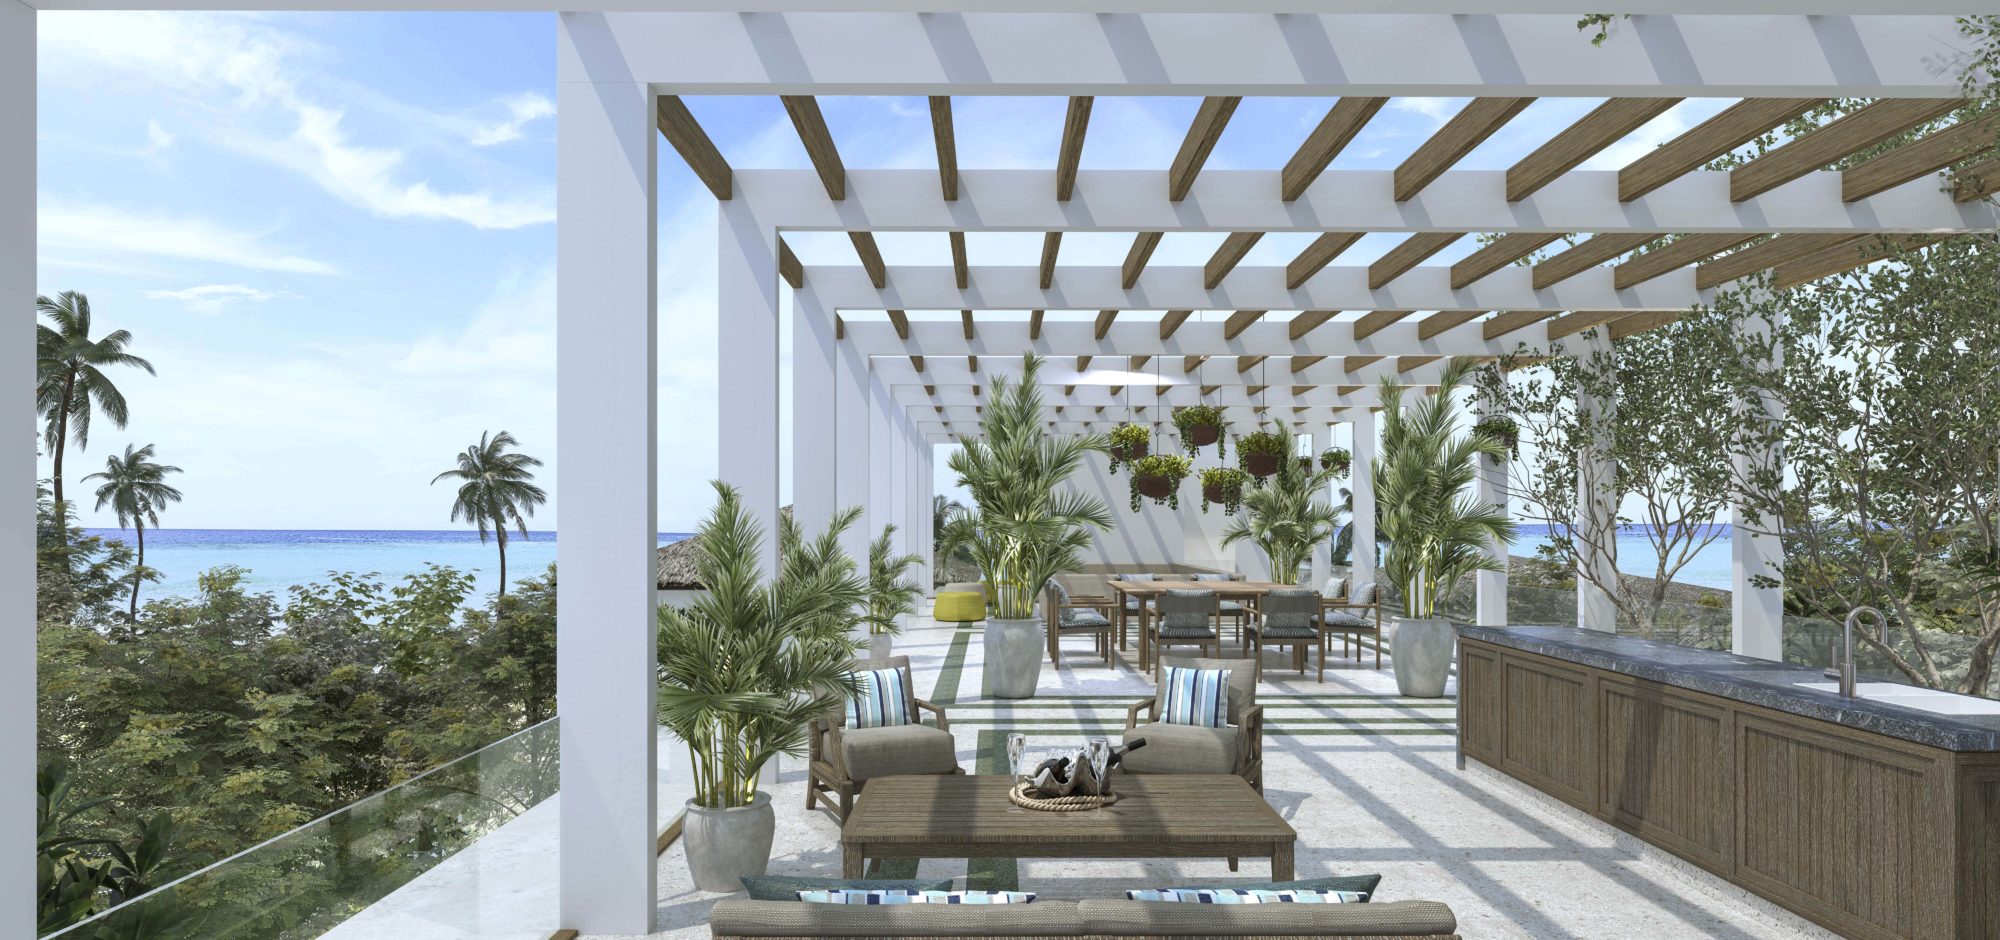 Raffles RoyaL Residence – Roof Terrace render-jpg